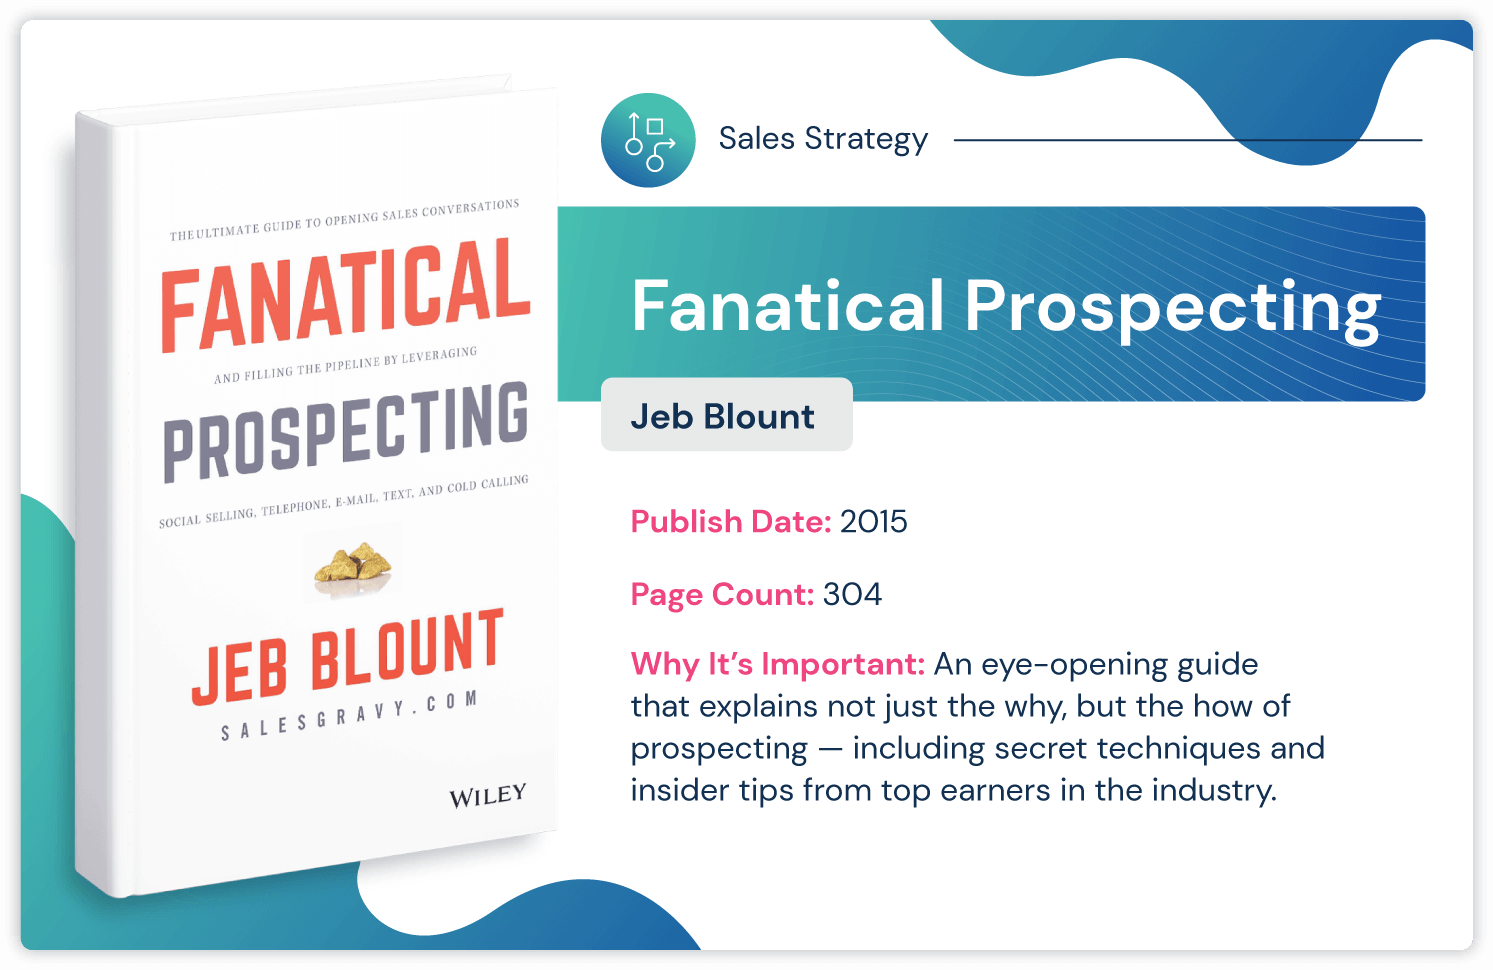 หนังสือกลยุทธ์การขาย "Fanatical Prospecting" โดย Jeb Blount เกี่ยวกับเคล็ดลับการตรวจหาบุคคลภายในที่ตีพิมพ์ในปี 2015 และ 304 หน้า